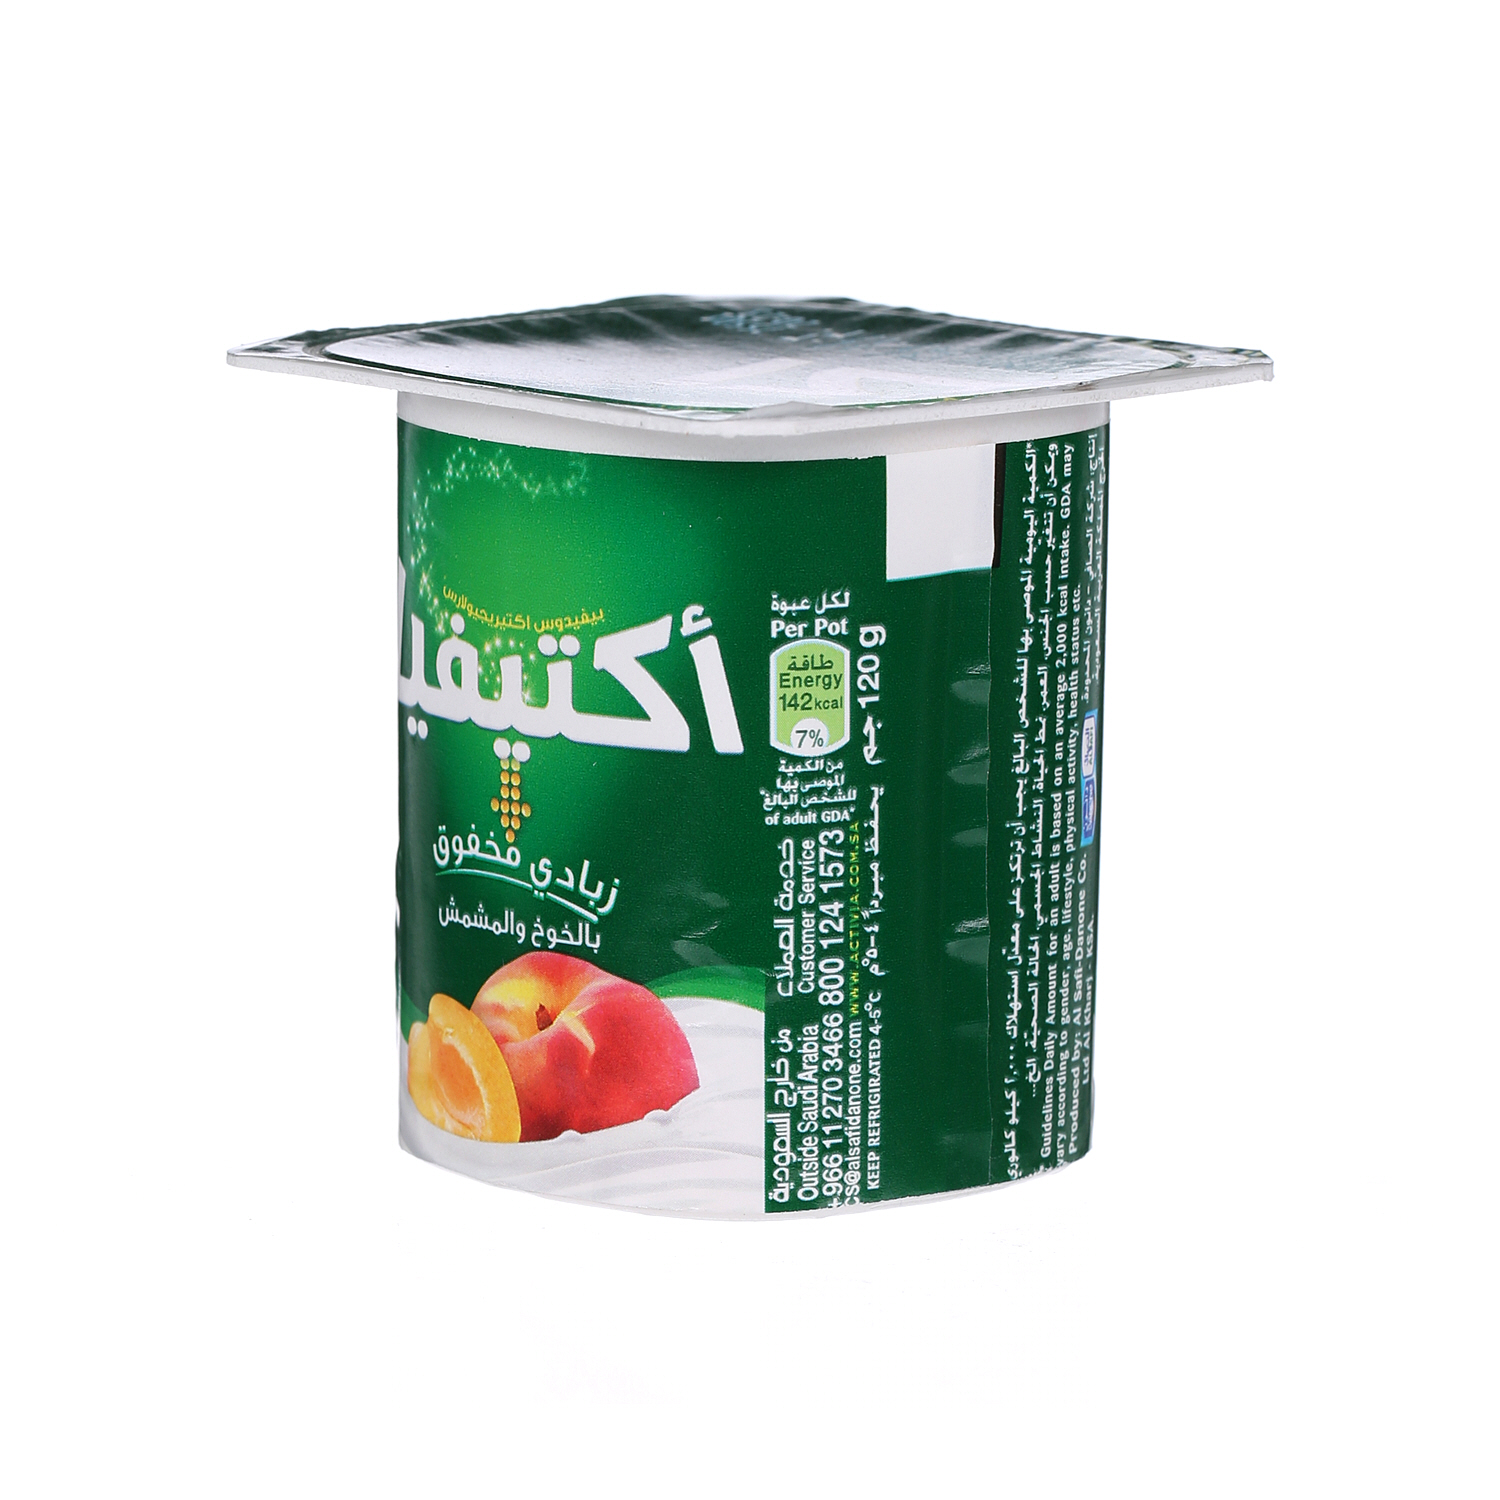 Al Safi Danone Activia Flavoured Youghurt Peach & Apricot 120 g